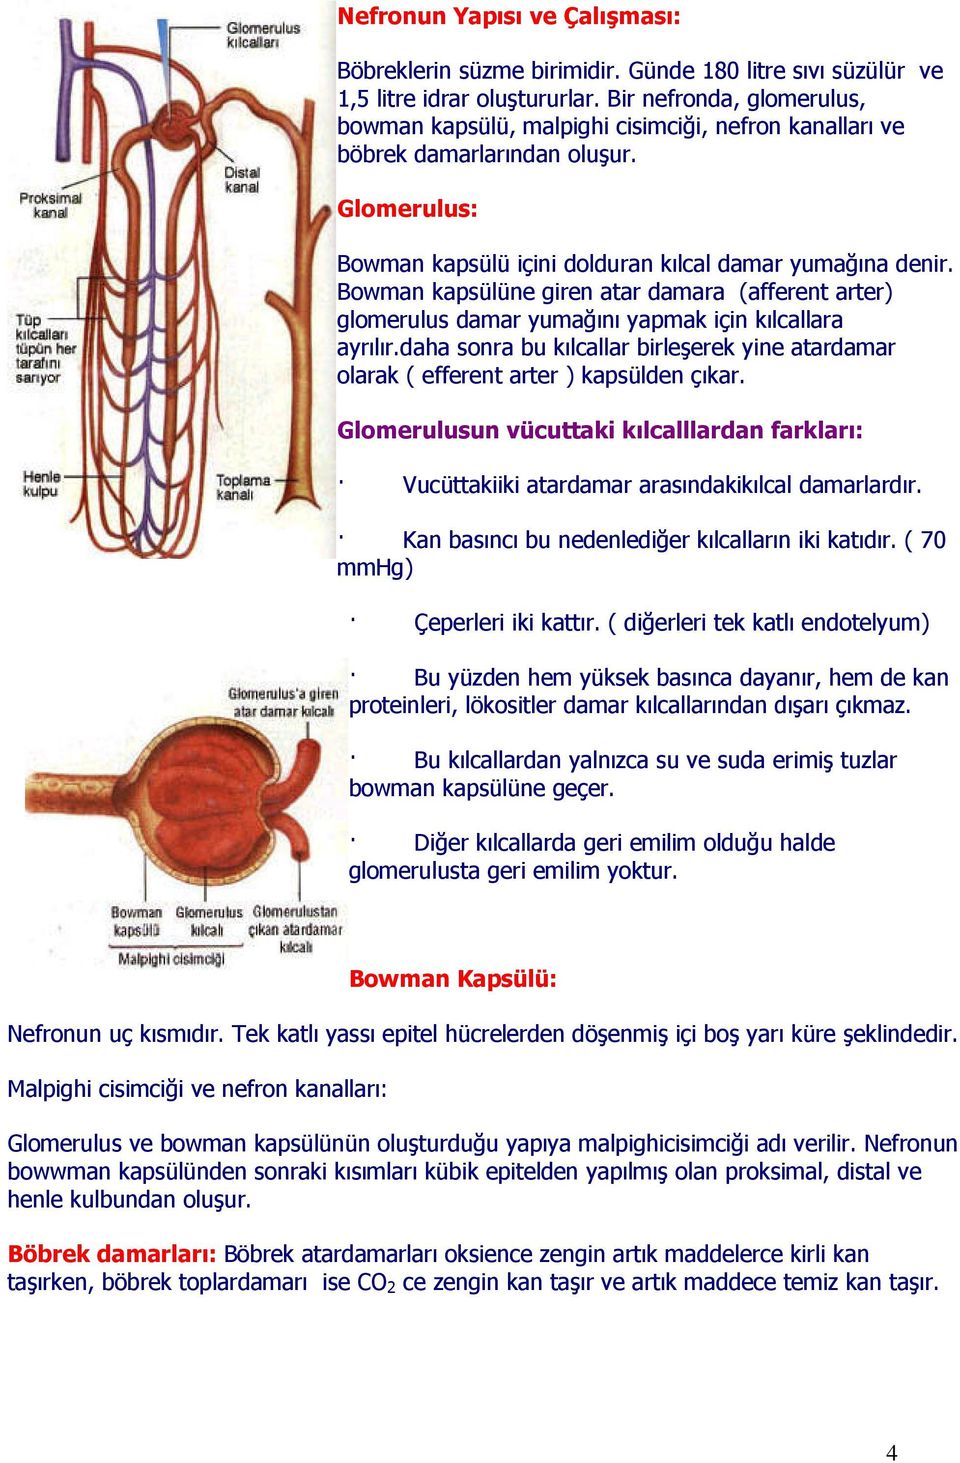 Bowman kapsülüne giren atar damara (afferent arter) glomerulus damar yumağını yapmak için kılcallara ayrılır.